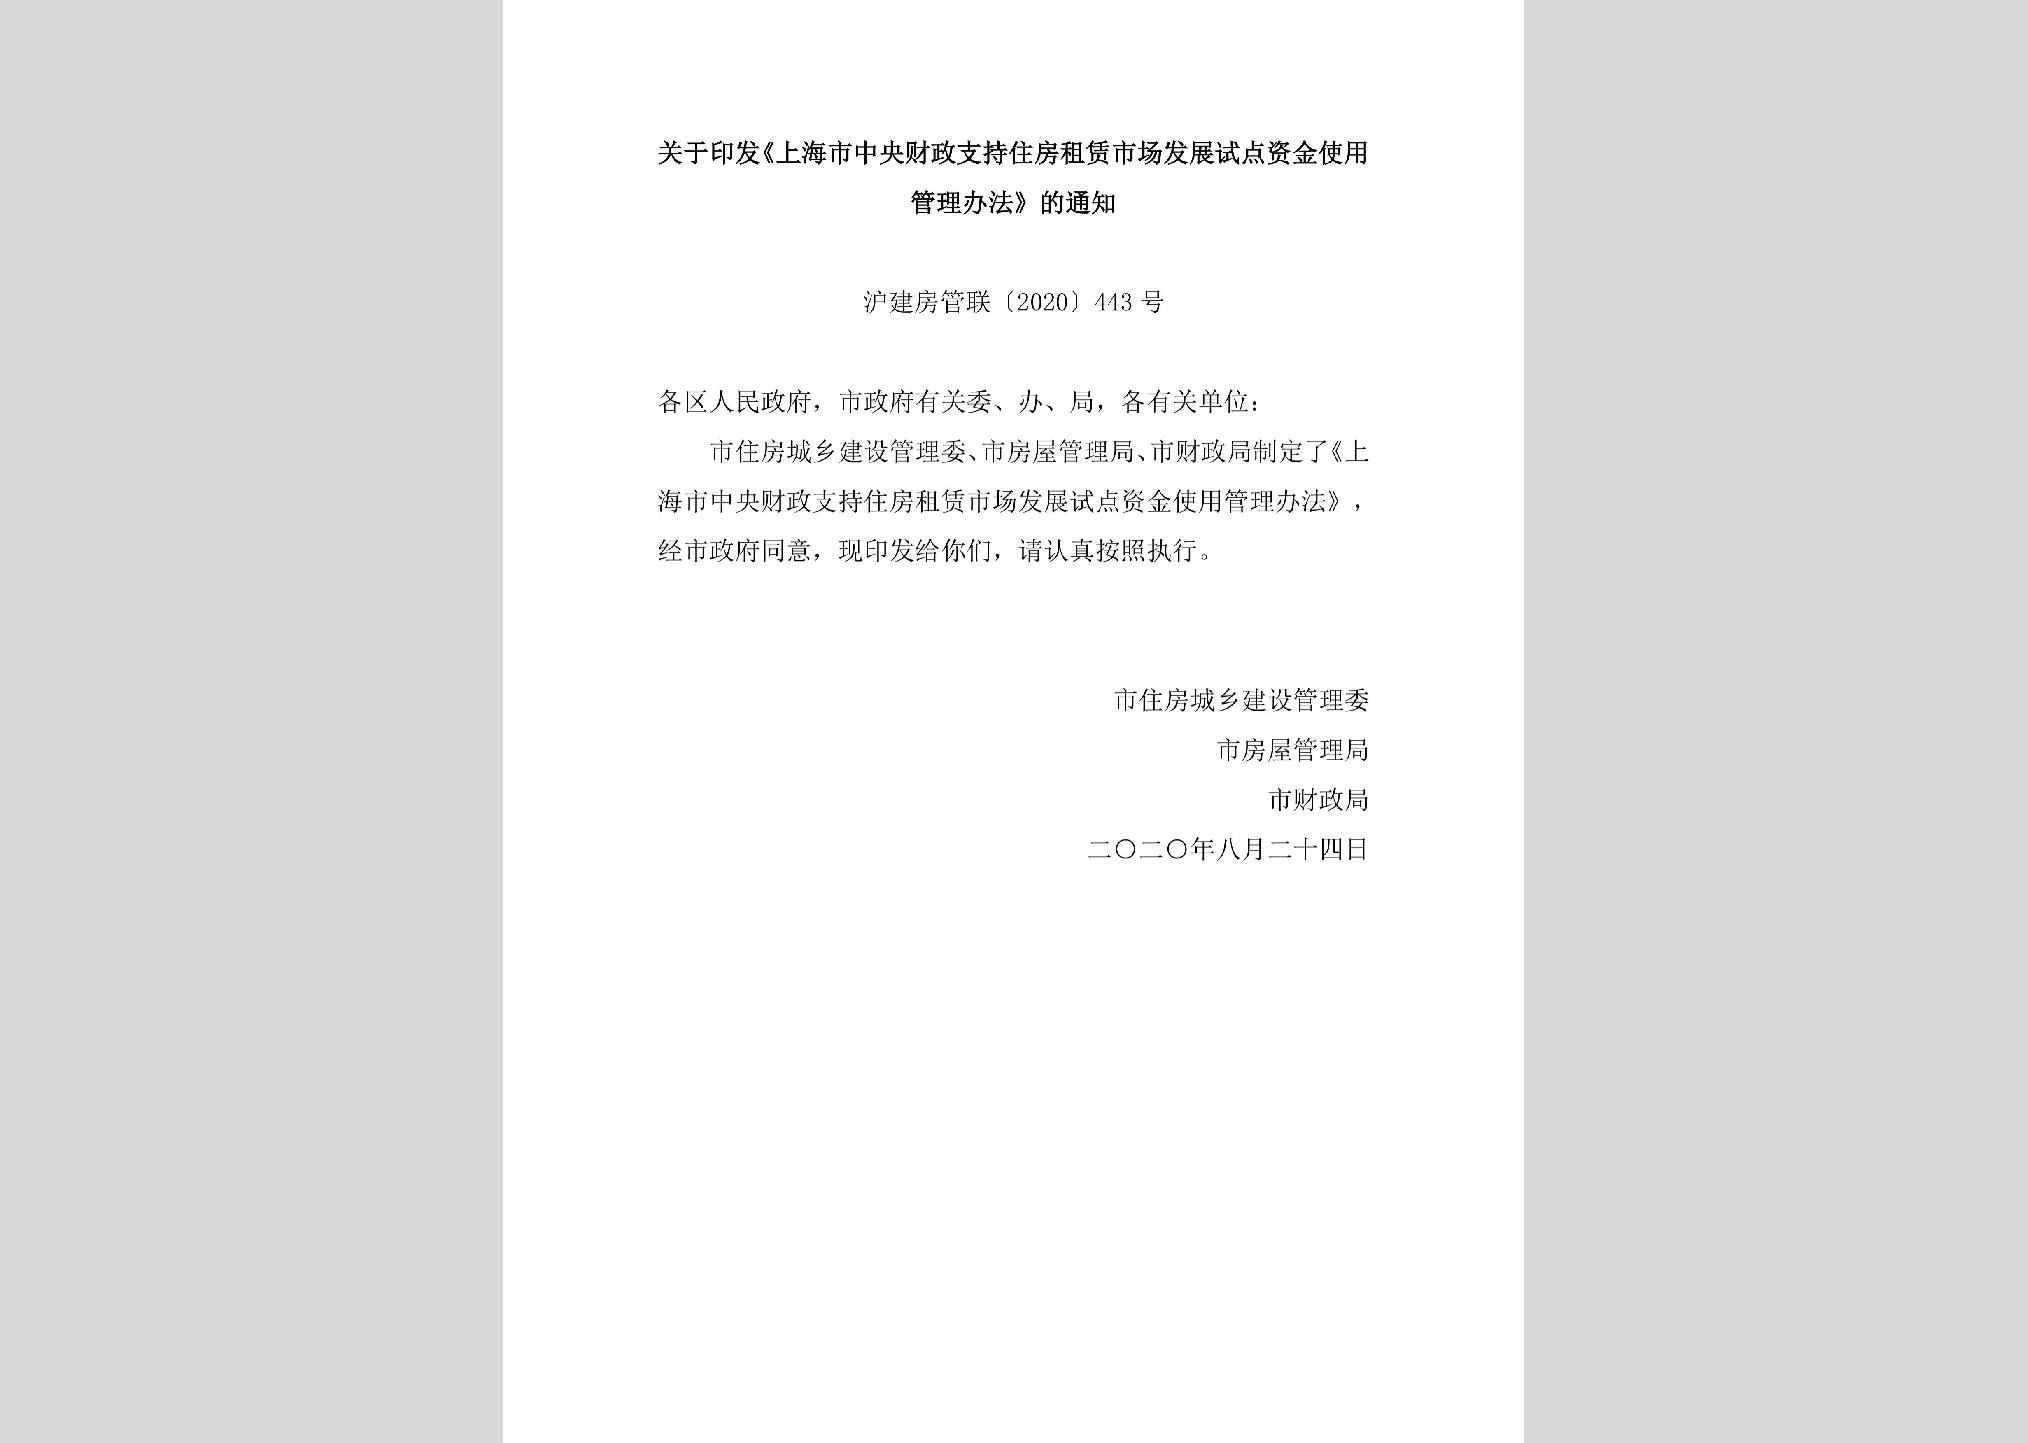 沪建房管联[2020]443号：关于印发《上海市中央财政支持住房租赁市场发展试点资金使用管理办法》的通知